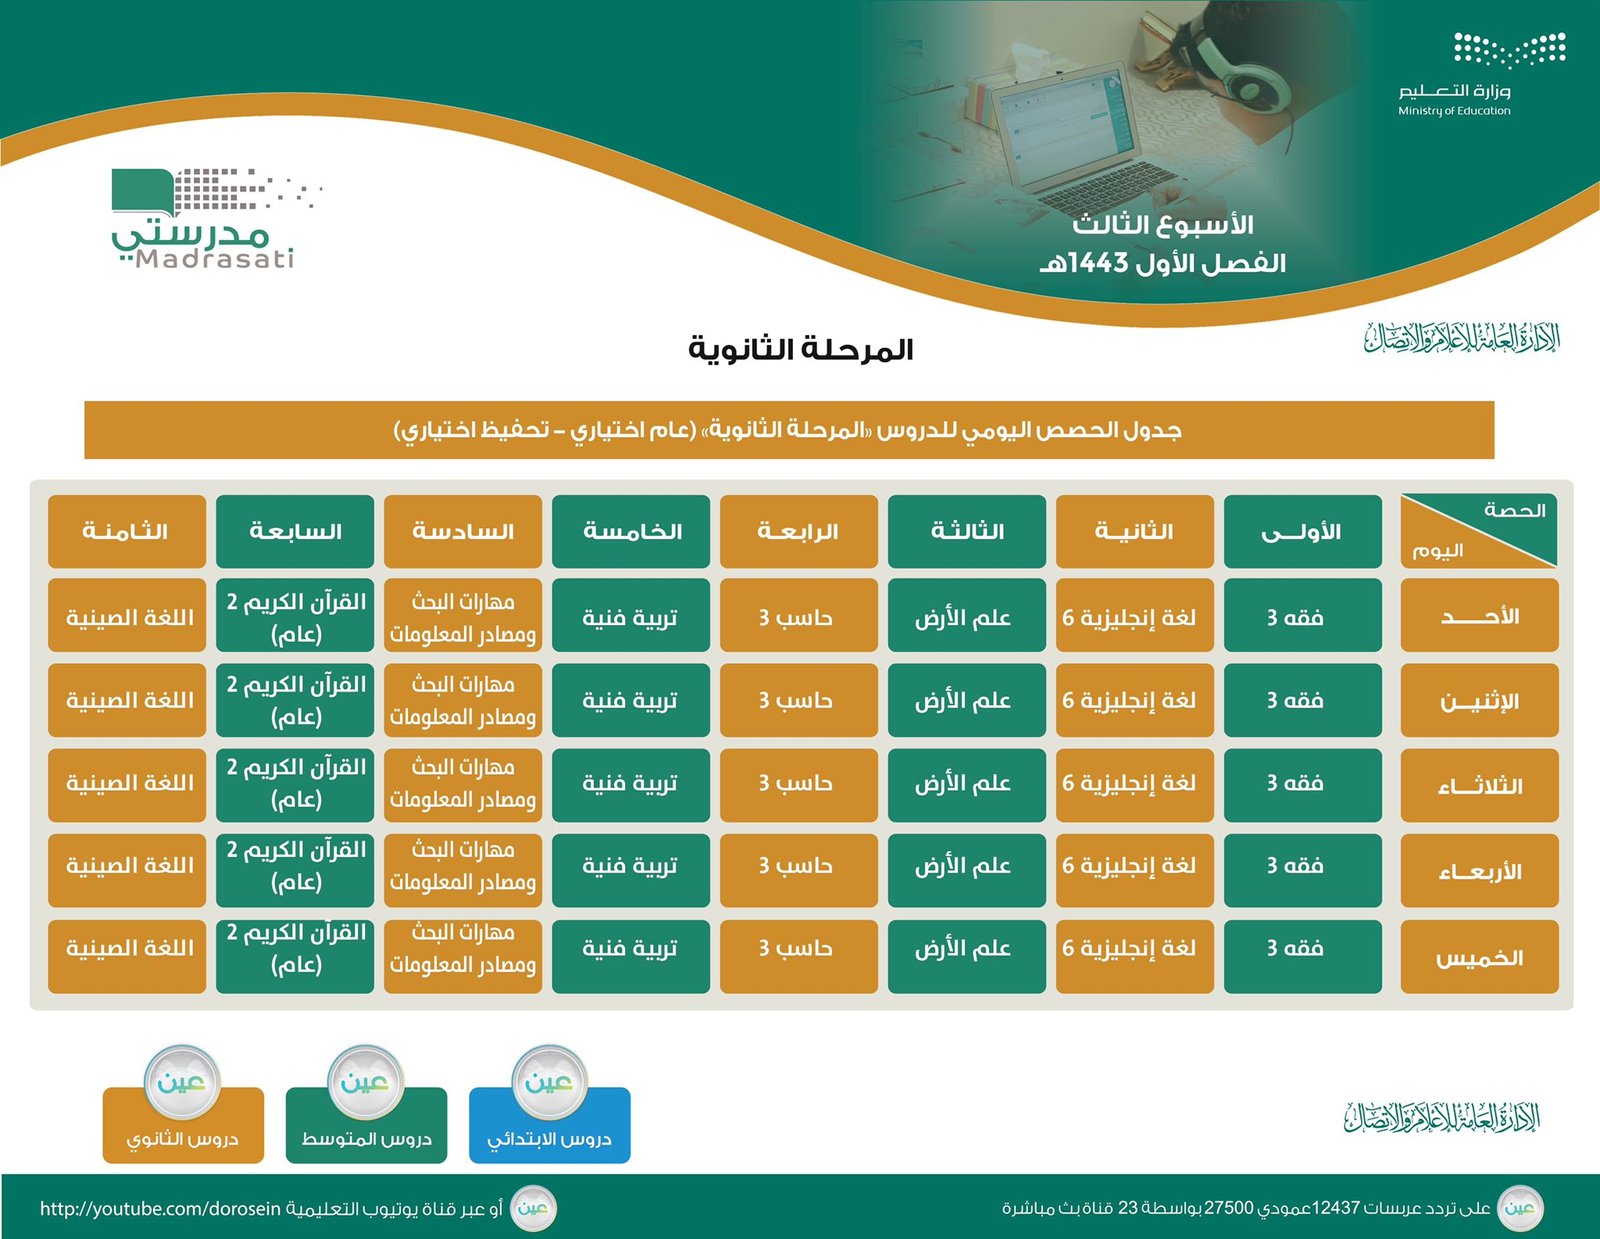 الحصص الدراسية للمتوسط والثانوي للأسبوع الثالث في السعودية 1